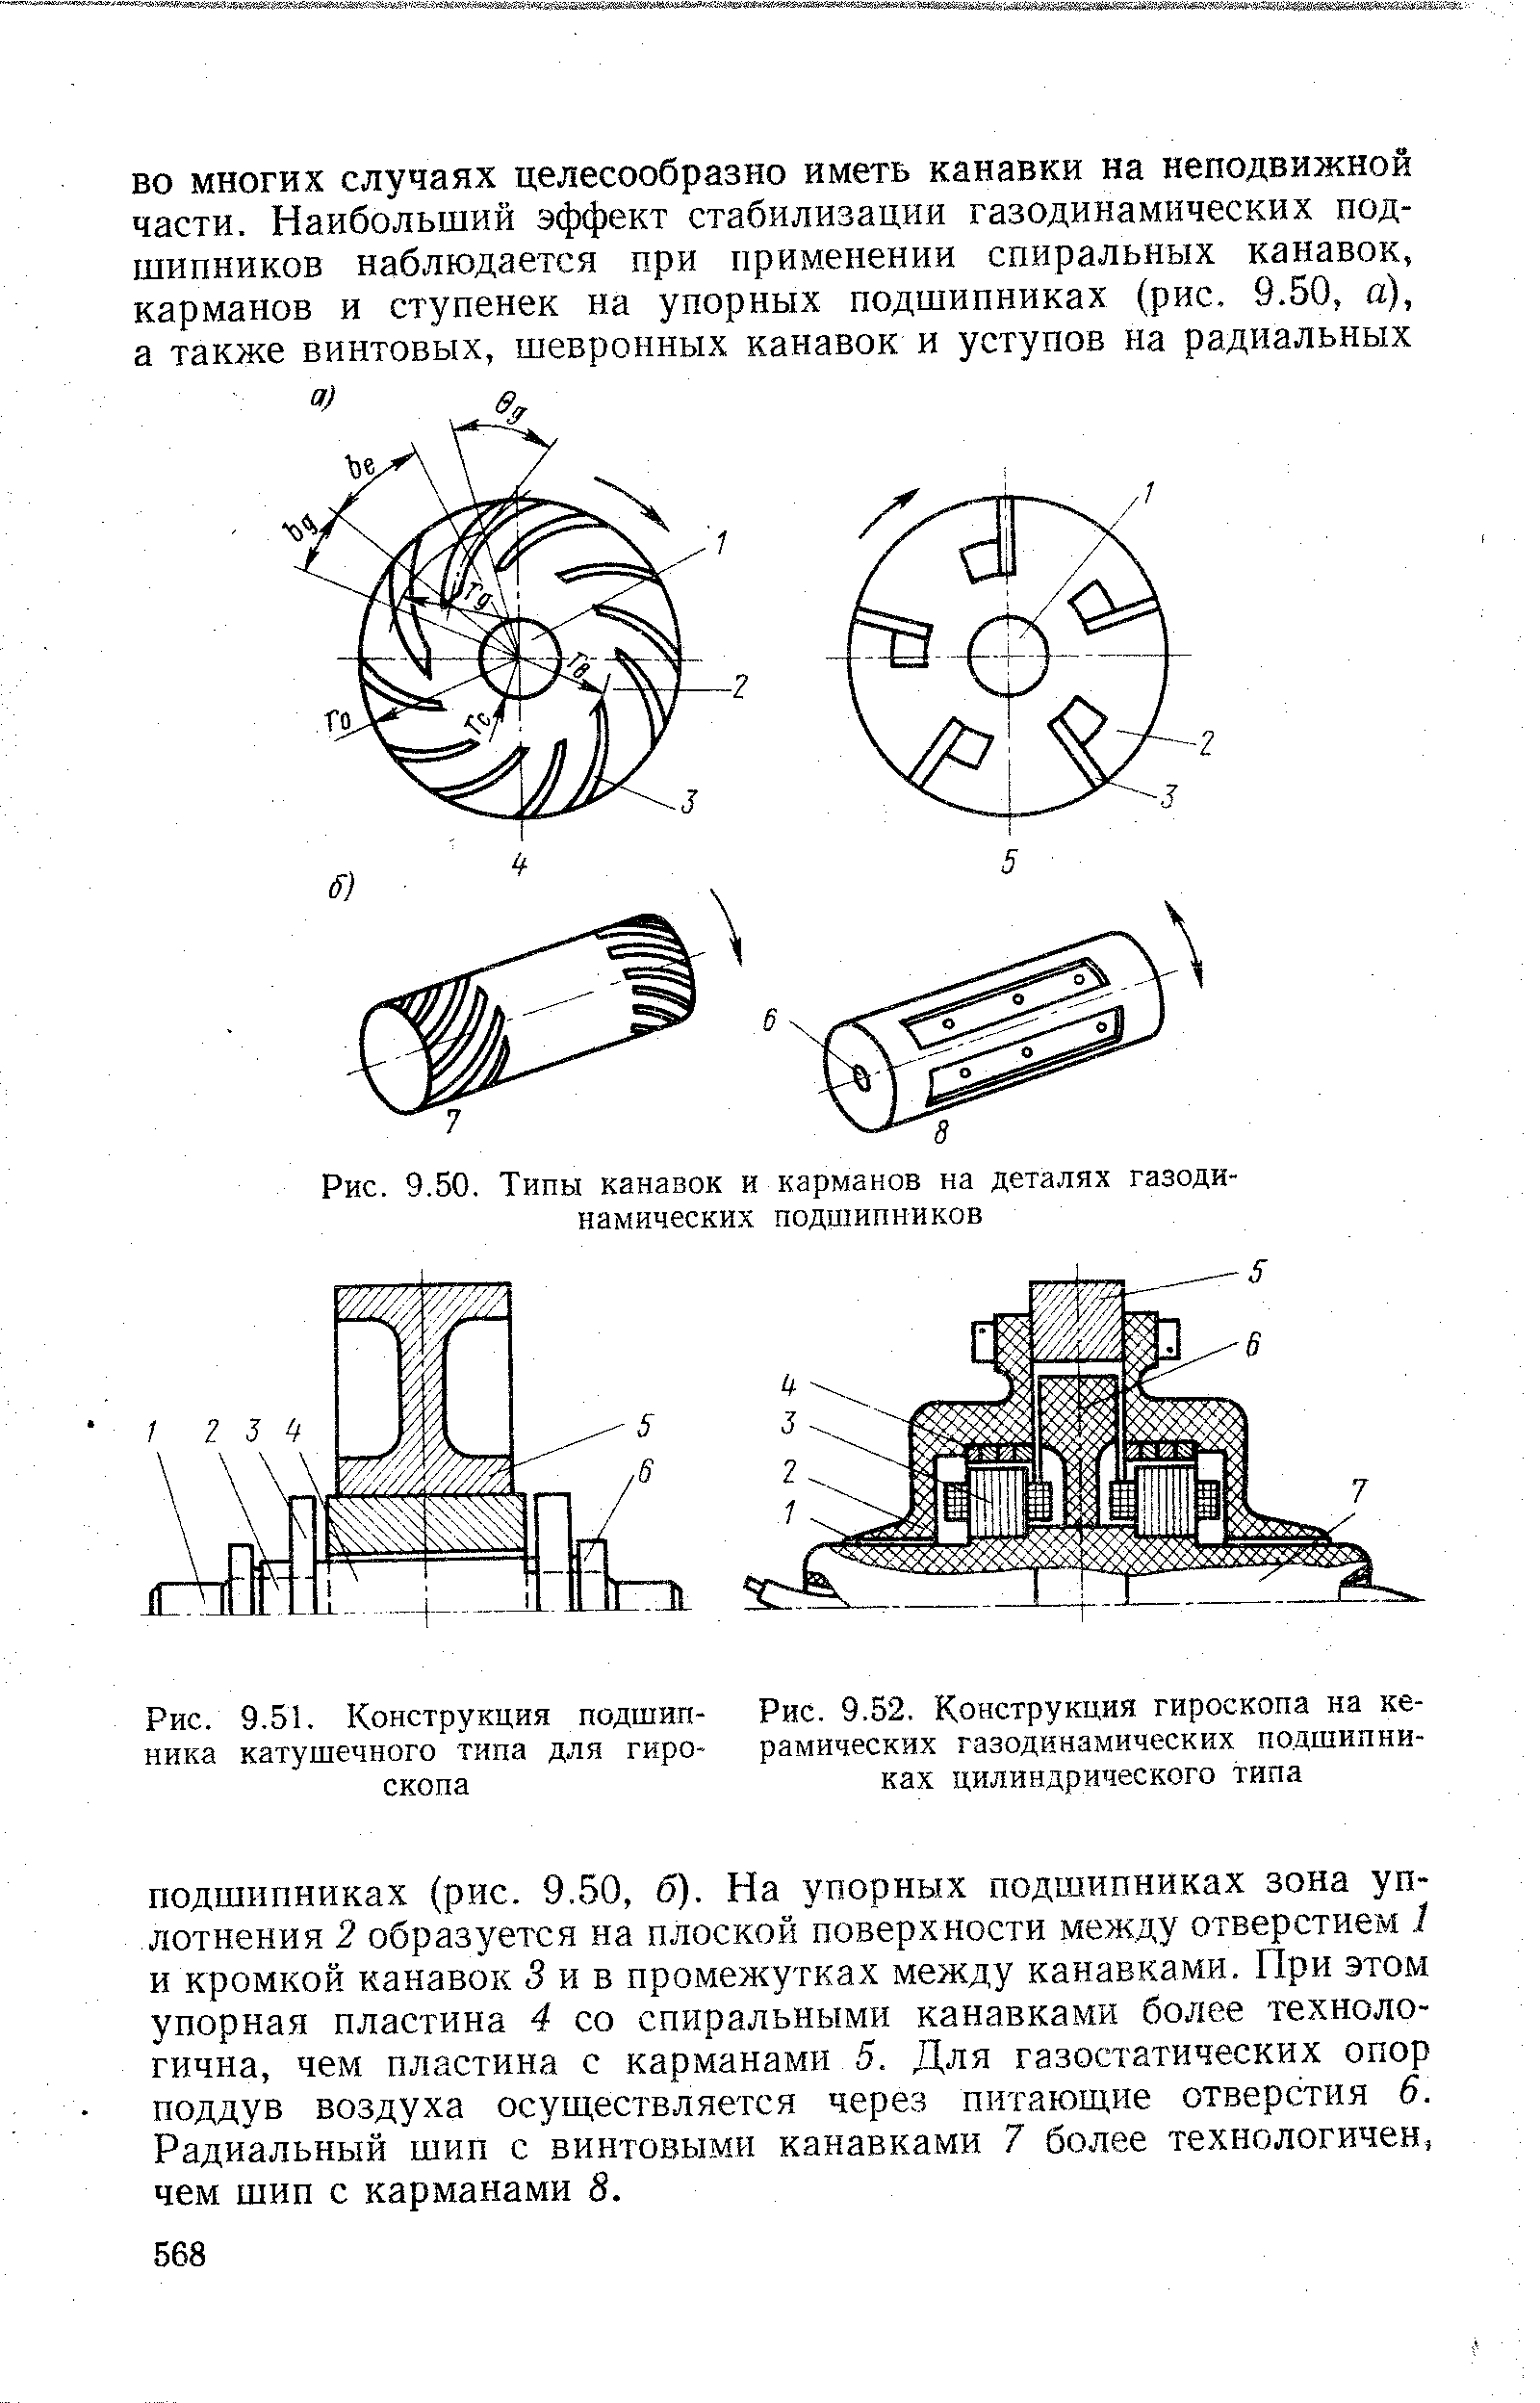 Рис. 9.52. Конструкция гироскопа на керамических газодинамических подшипниках цилиндрического типа
